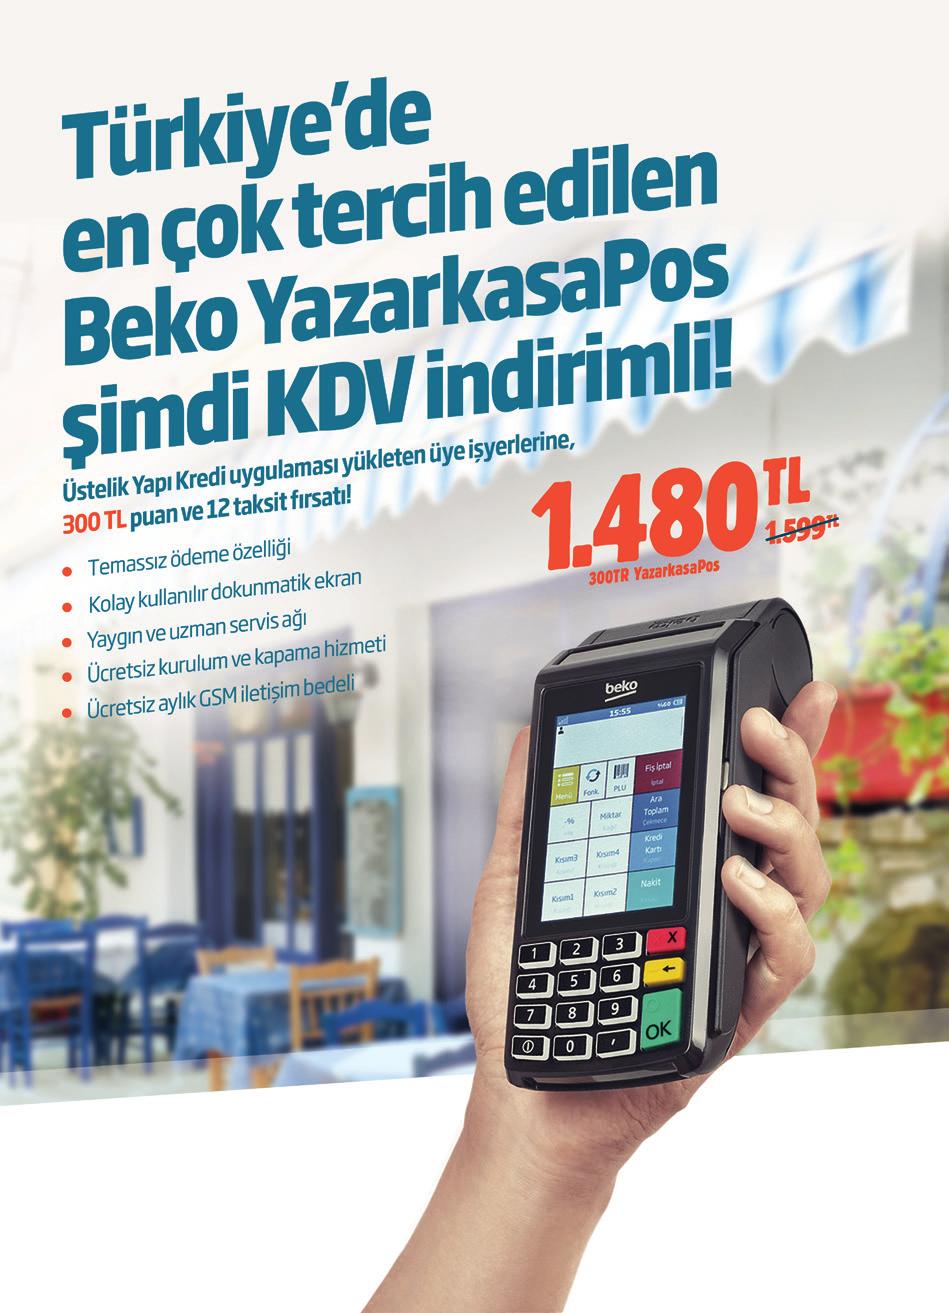 Yazar Kasalar Banka Fırsatları Kampanya 1-30 Eylül 017 tarihleri arasında Bonus üyesi Beko mağazalarında geçerlidir. Cep telefonlarında taksit uygulanmamaktadır.